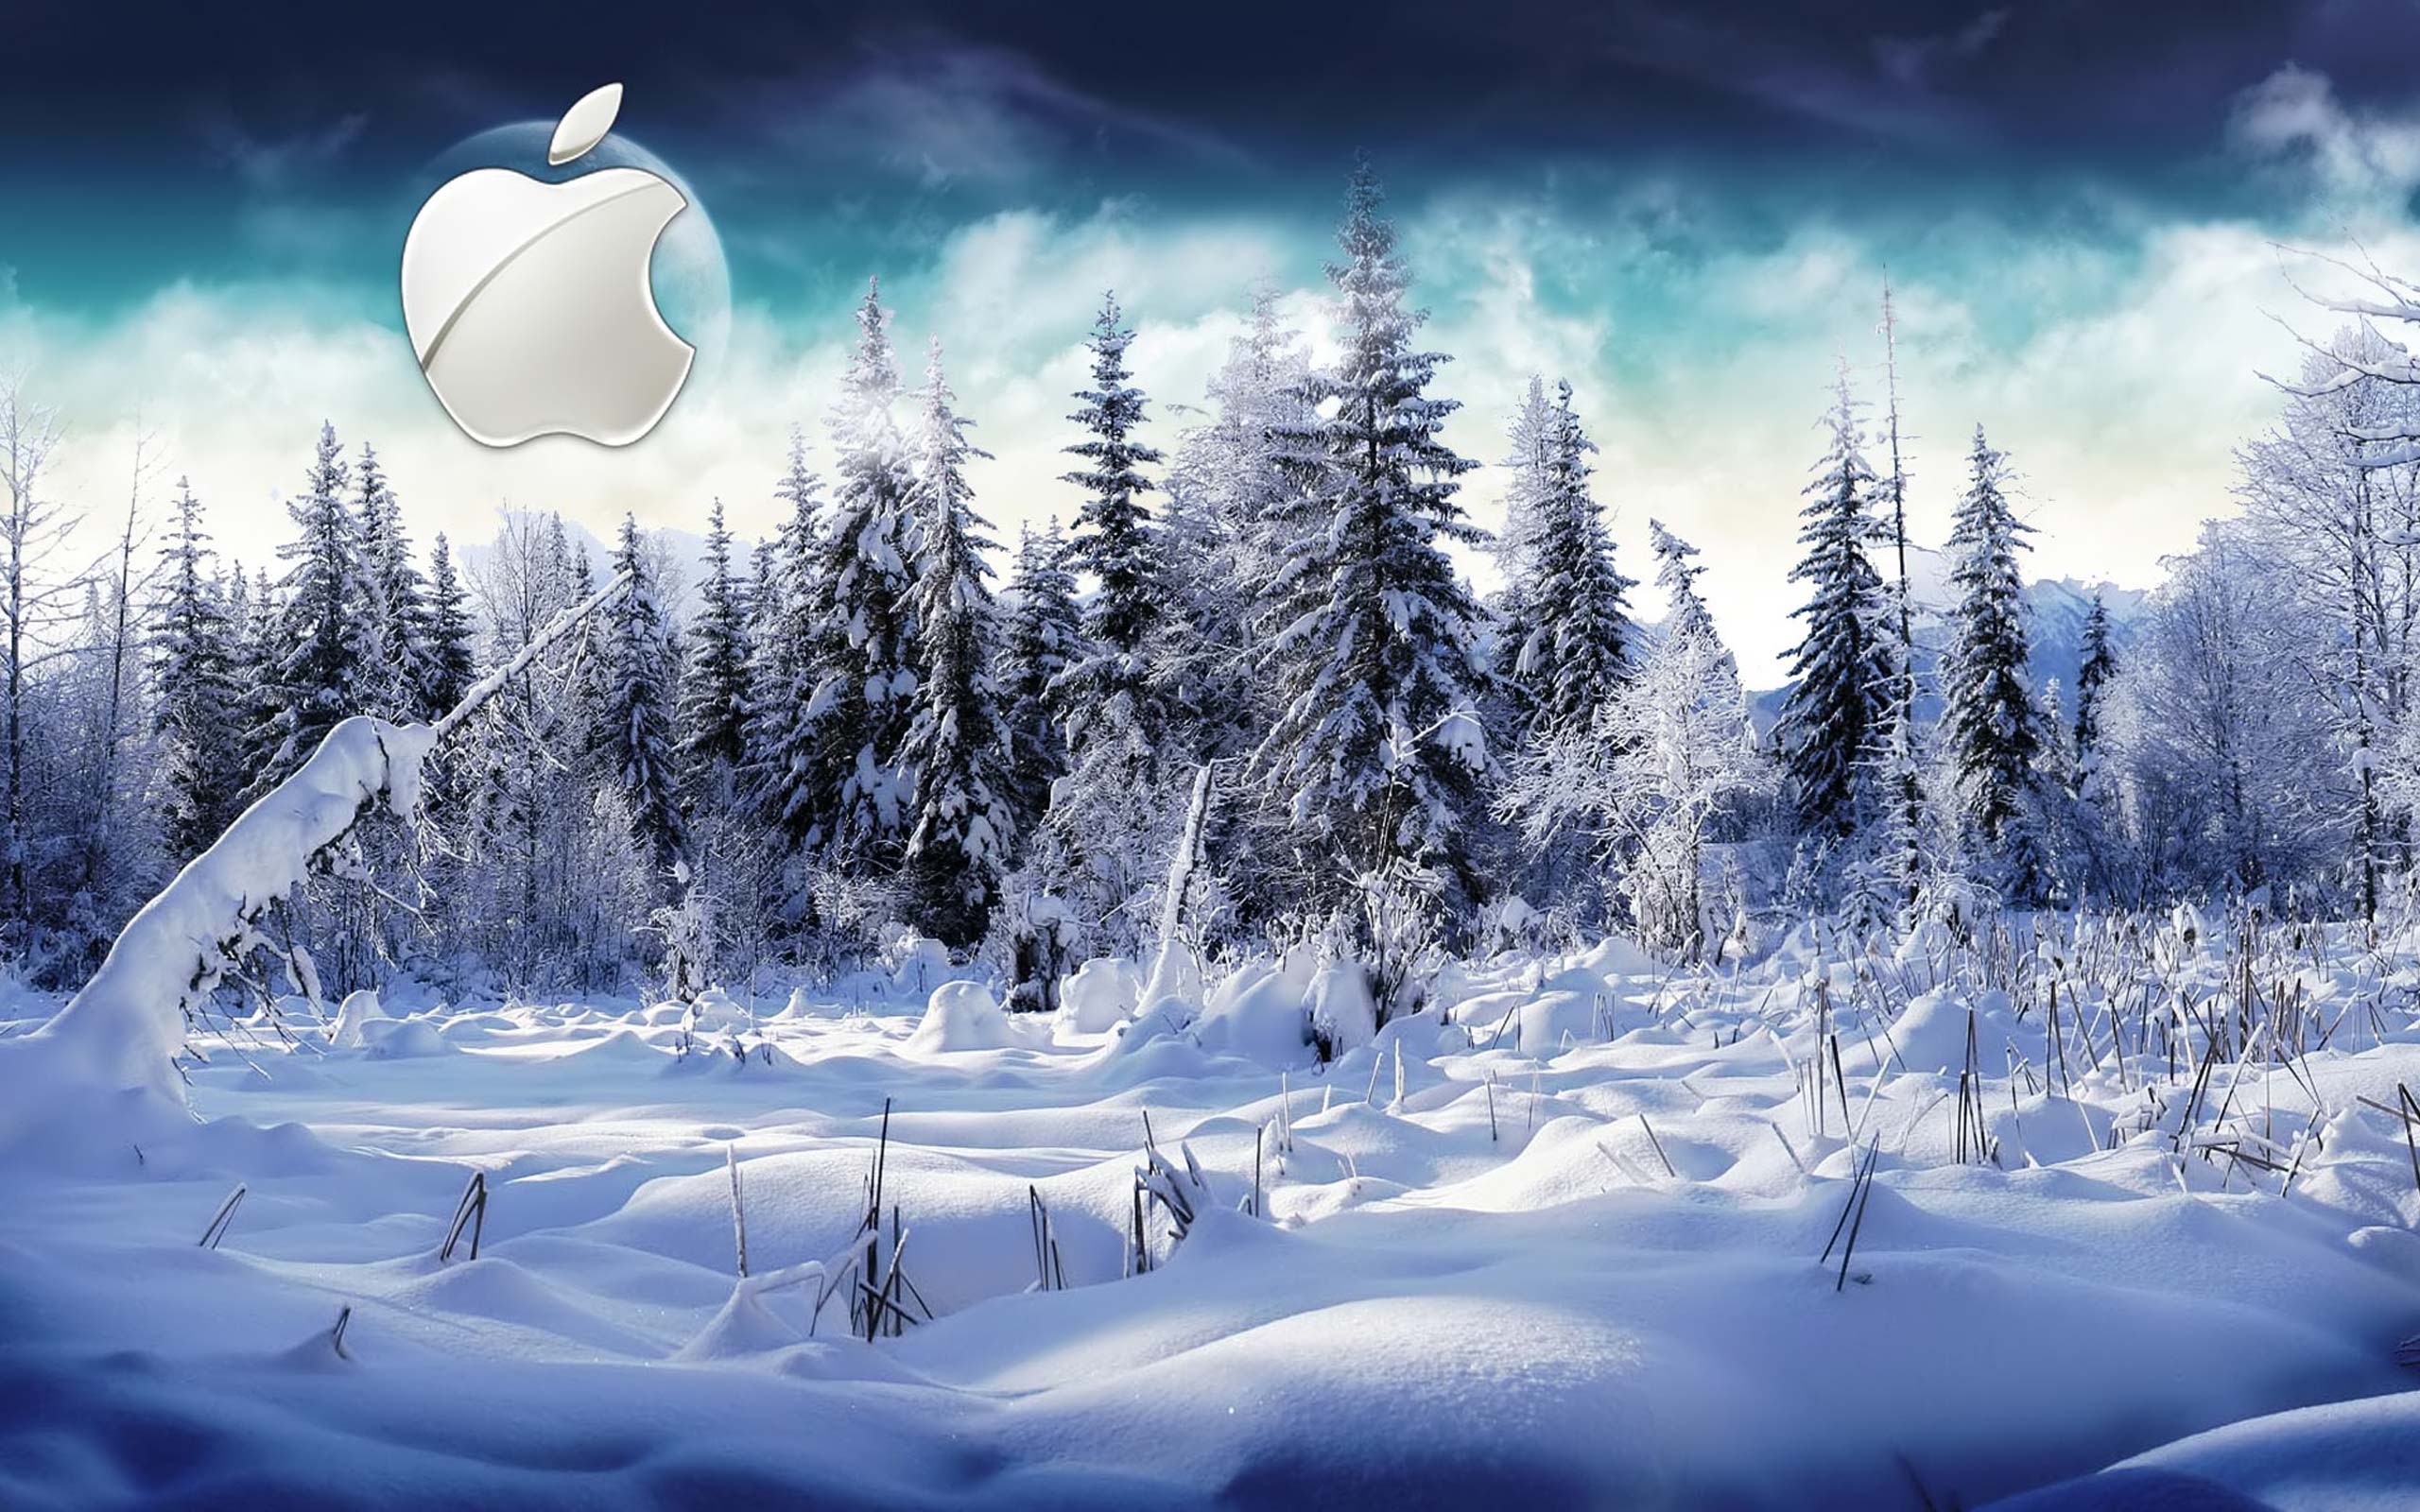 Desktop Wallpaper · Gallery · Computers · Winter Apple Mac ...